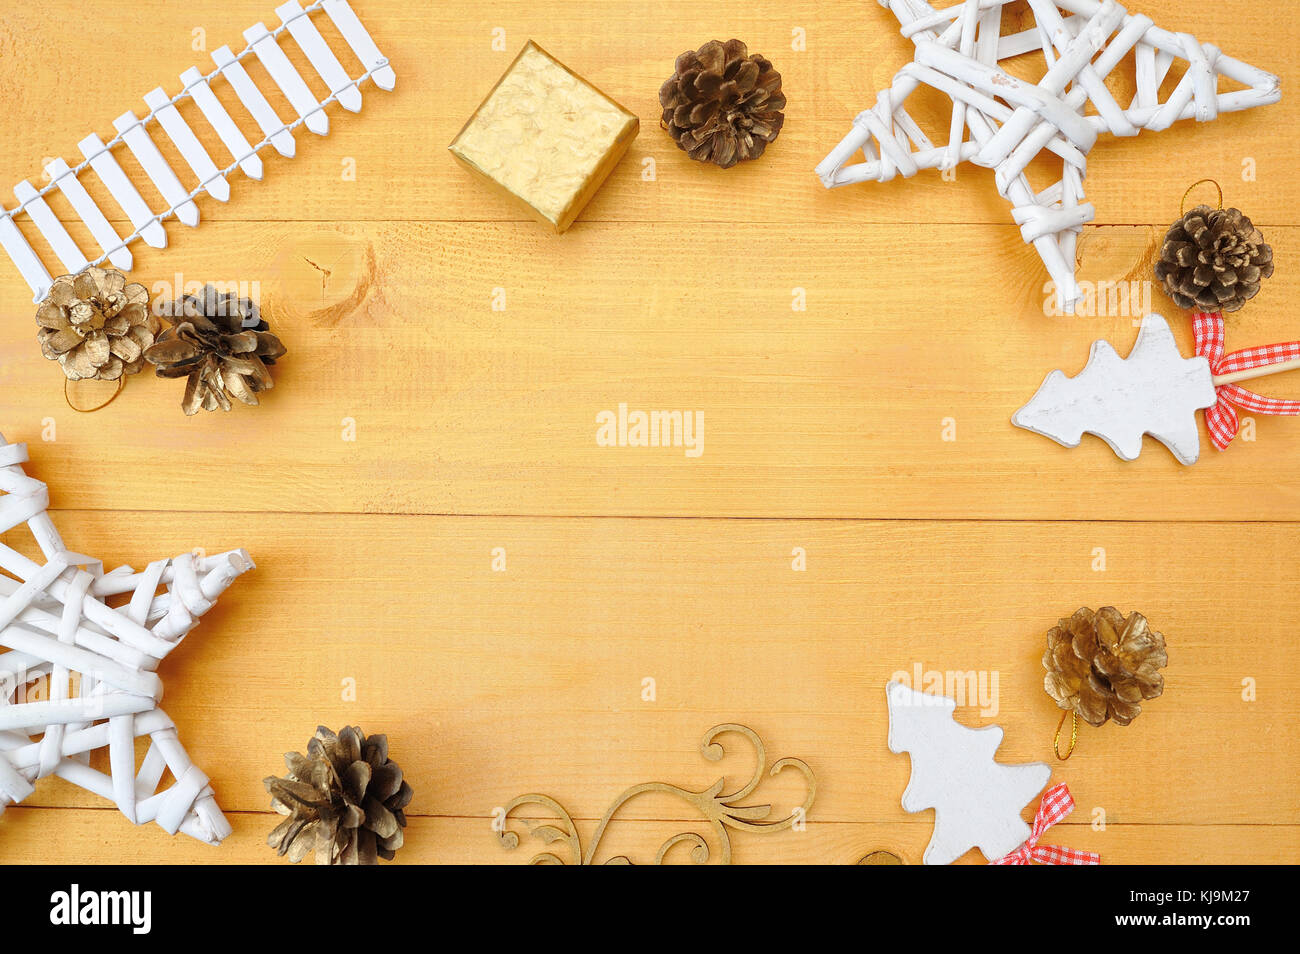 Weihnachten Hintergrund Kraftpapier Blatt Papier mit Platz für Ihren Text und White christmas tree Star und Kegel auf eine gold Holz- Hintergrund. Flach, Ansicht von oben Foto mockup Stockfoto